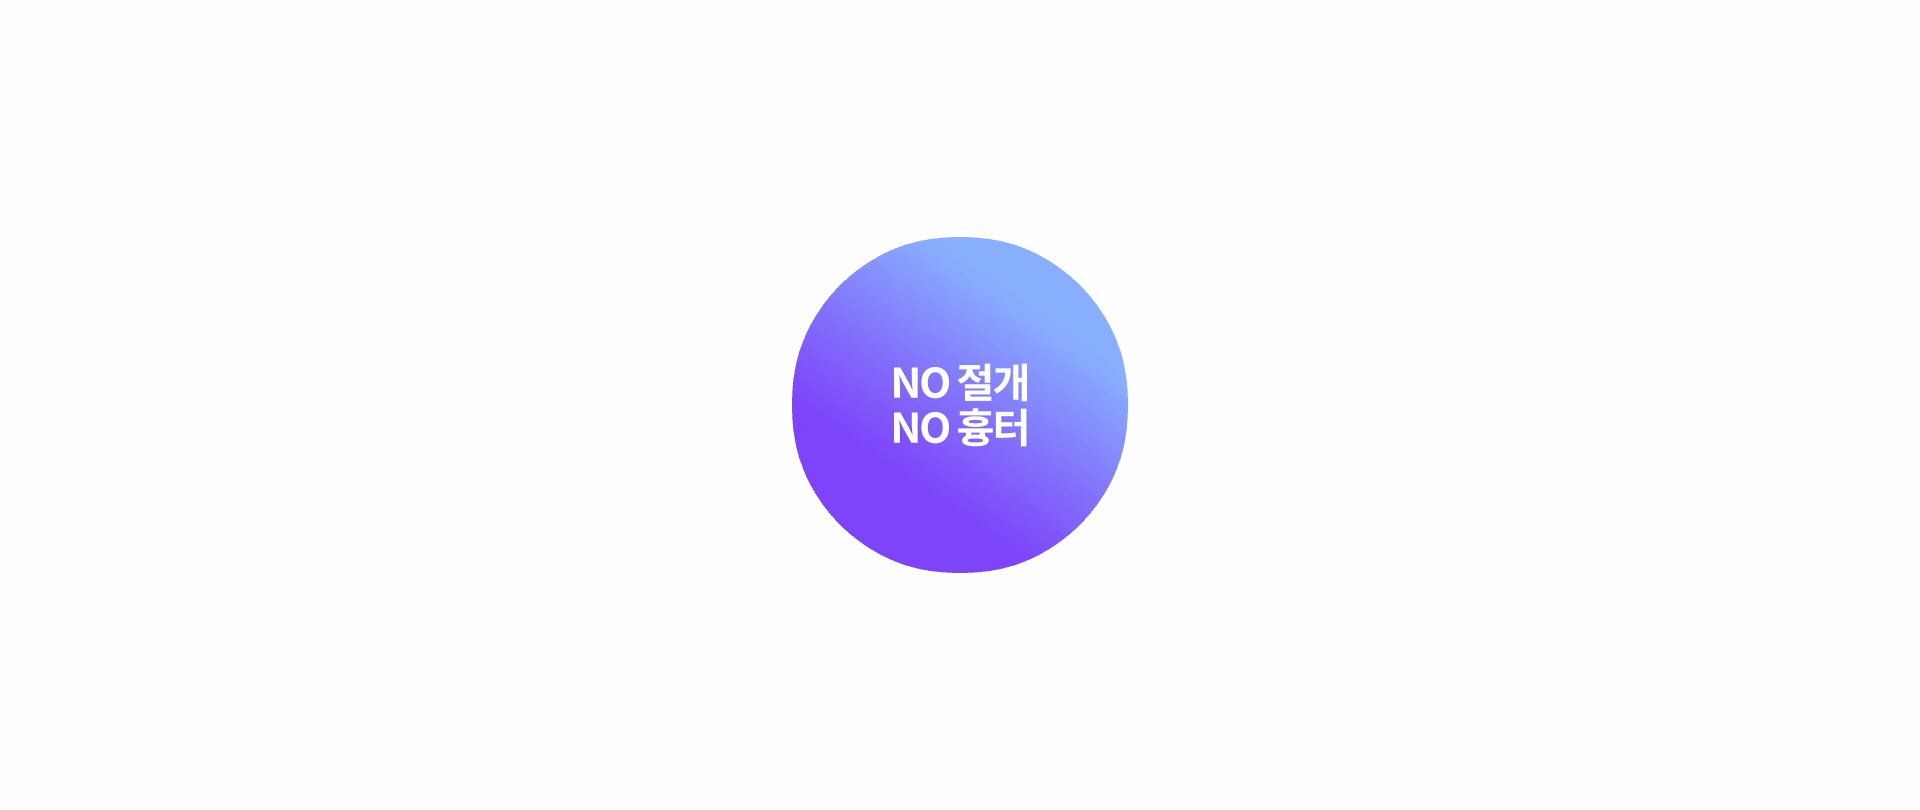 짧은 시간 내 강력한 리프팅효과, NO절개 NO흉터, 실밥 제거 없이 일상생활 복귀